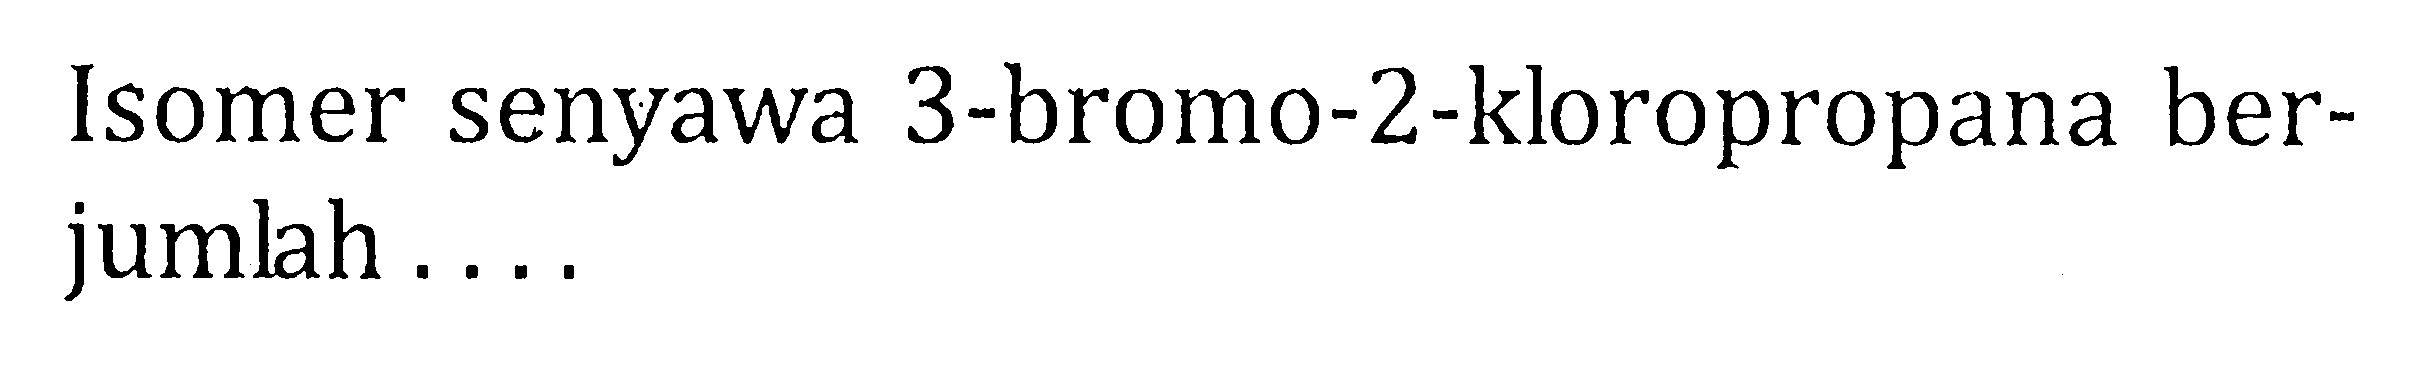 Isomer senyawa 3-bromo-2-kloropropana ber-jumlah ....